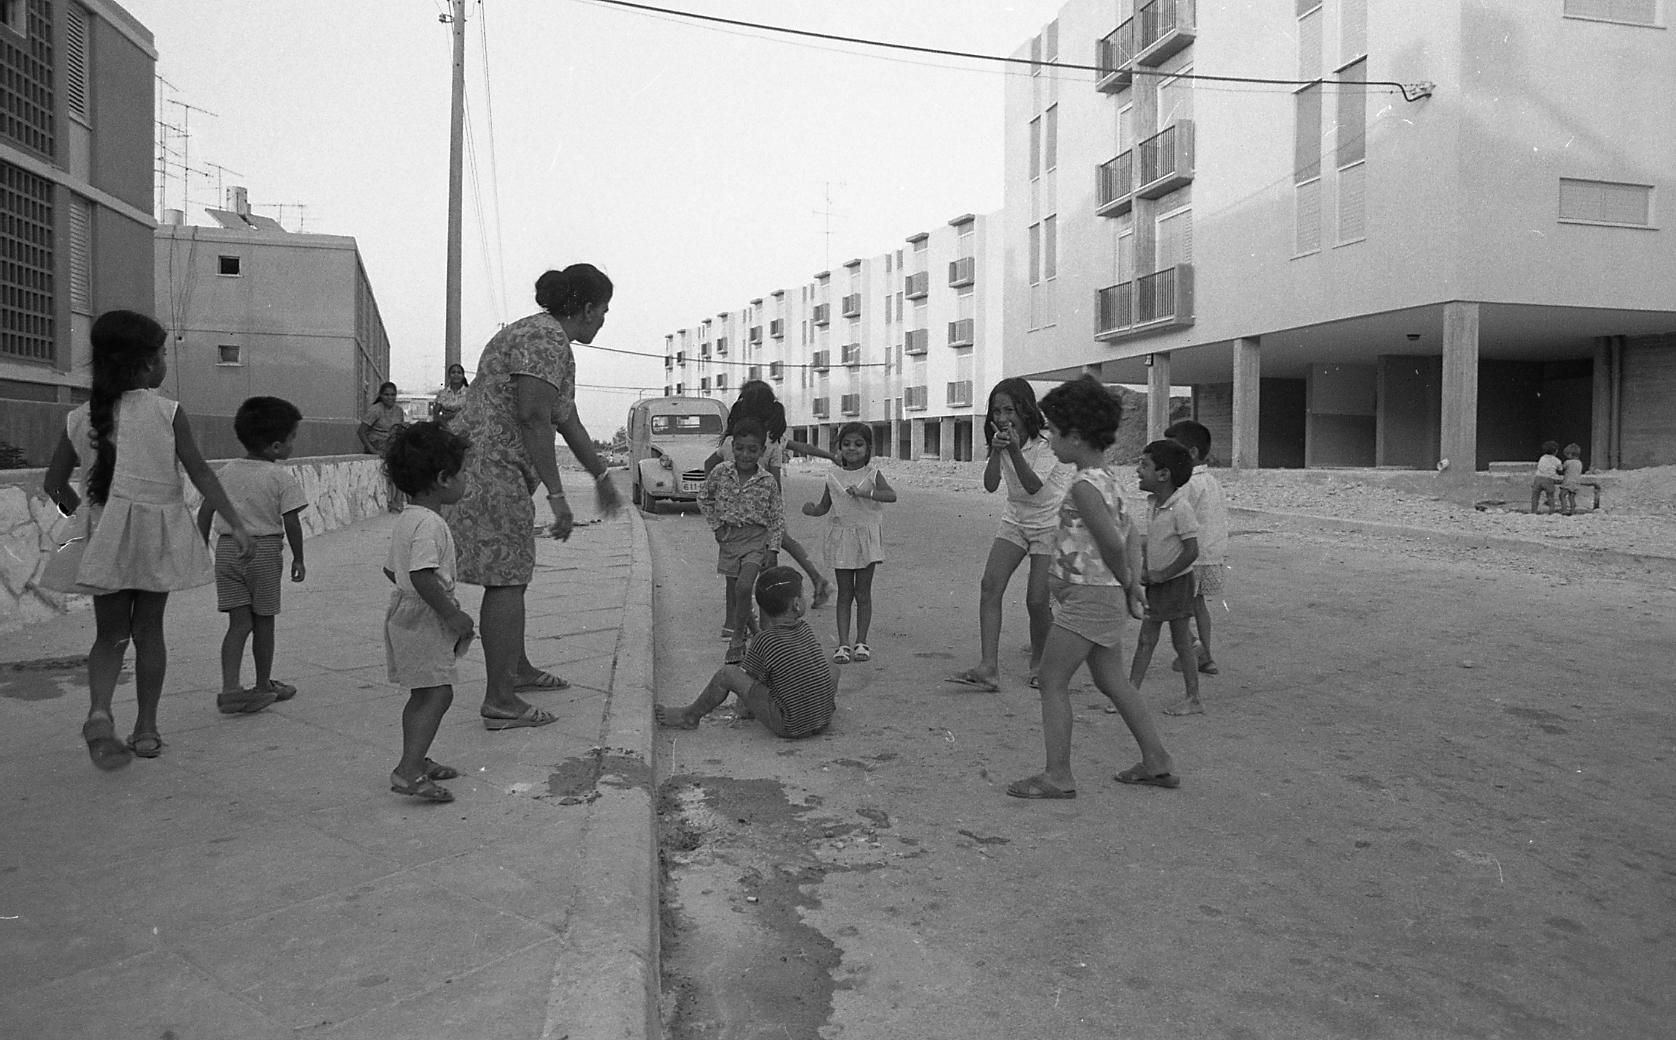 ילדים משחקים ברחוב, 1972 (צילום: ארכיון עליזה אורבך, הספרייה הלאומית)